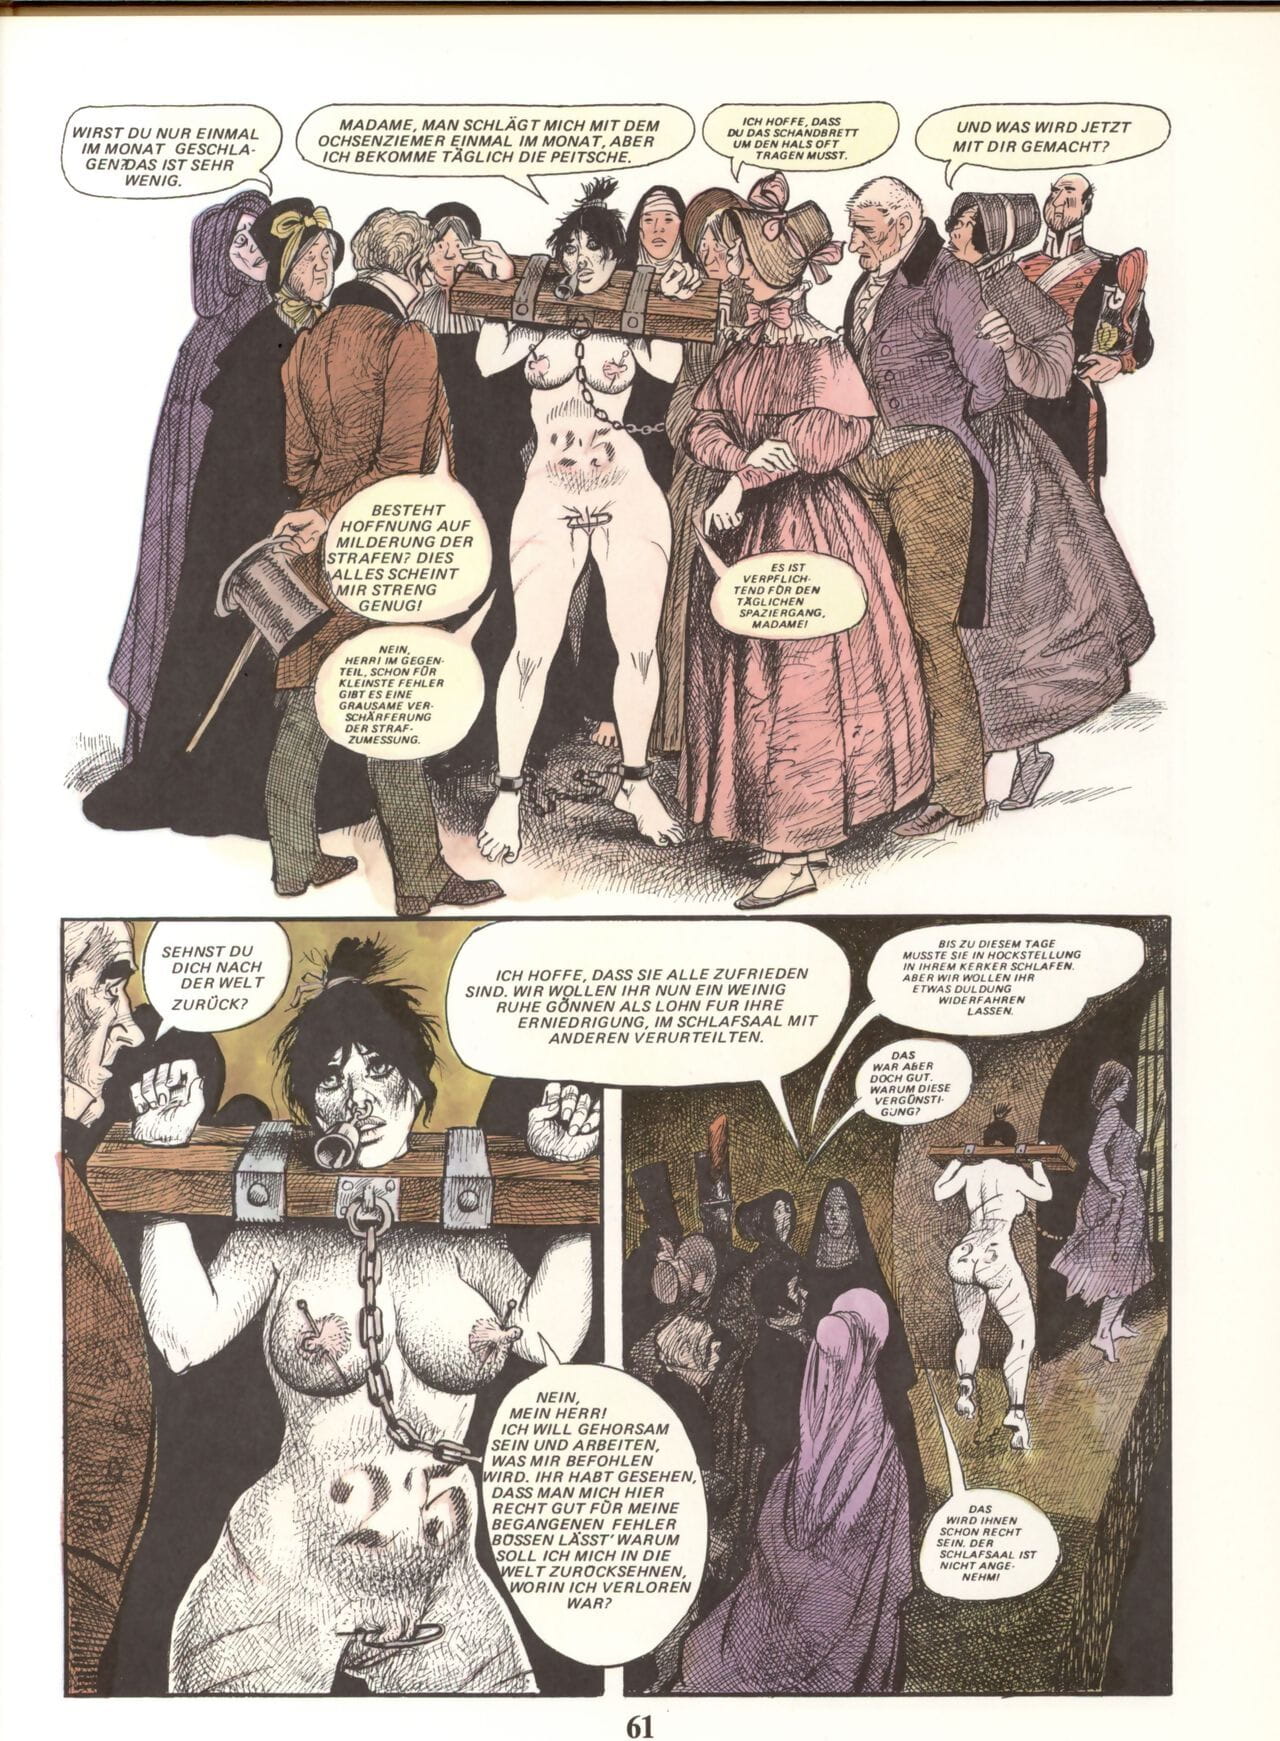 Marie Gabrielle De Saint eutrope #02 PARTIE 3 page 1